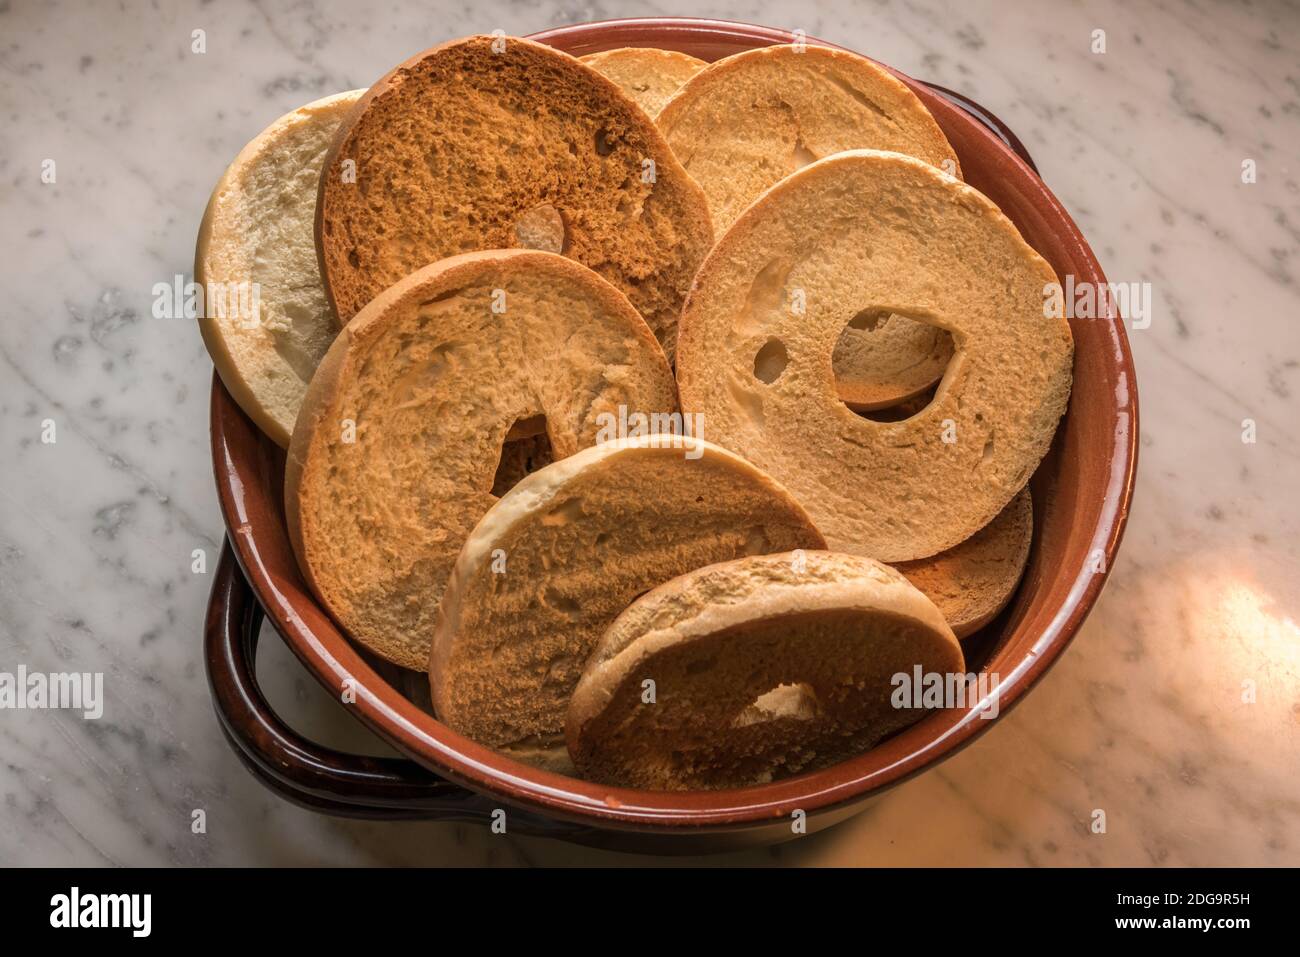 Friselle in vaso di terracotta, tipico pane italiano a forma di ciambella fatto con farina di grano duro e tostato in forno. Ideale per un aperitivo con tomat Foto Stock